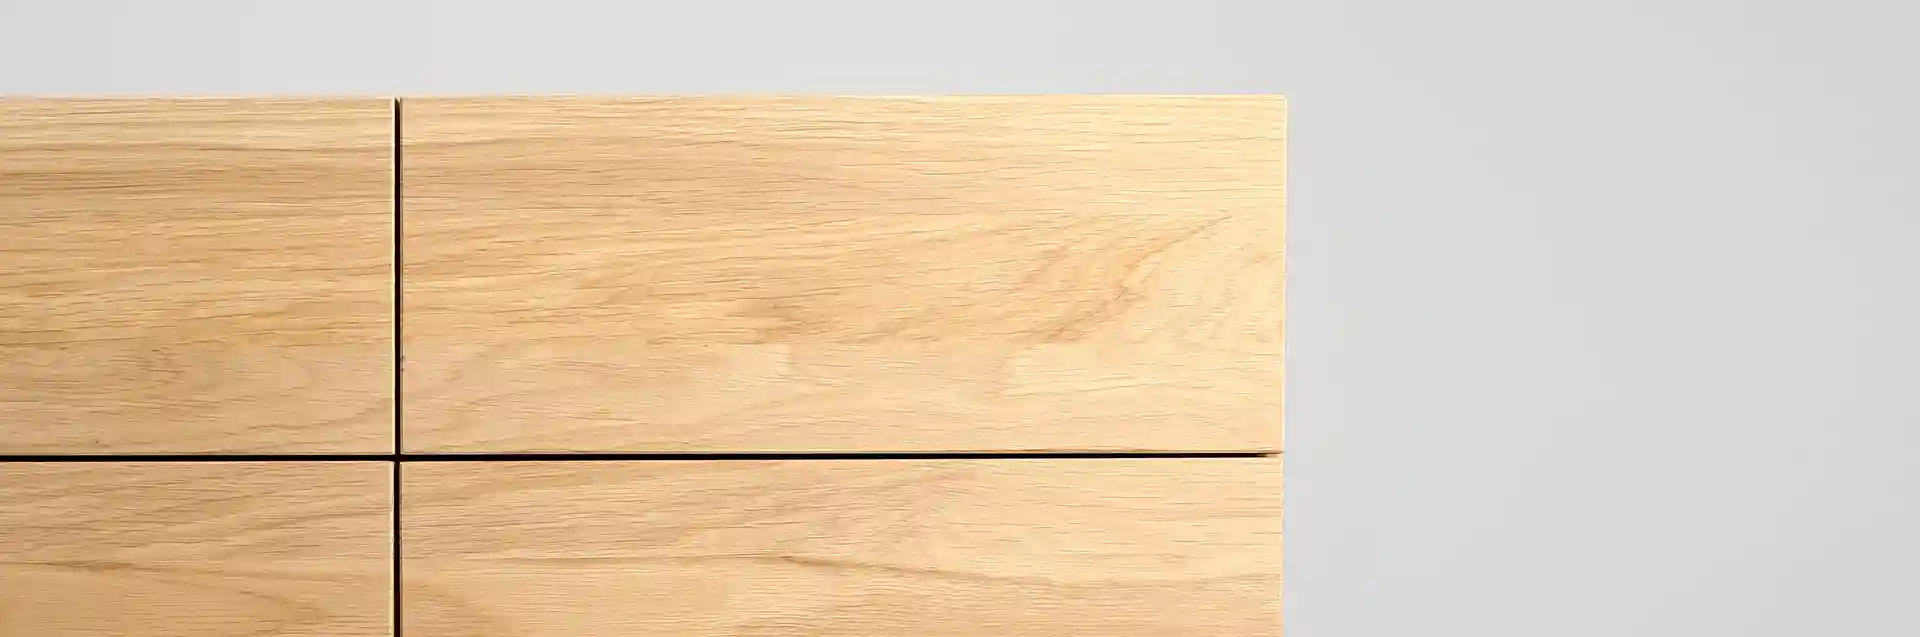 Komoda drewniana MILONI OX, Kolor: 03 Natural, Wymiary: Dł: 180 x Sz: 43 x Wys: 70 cm